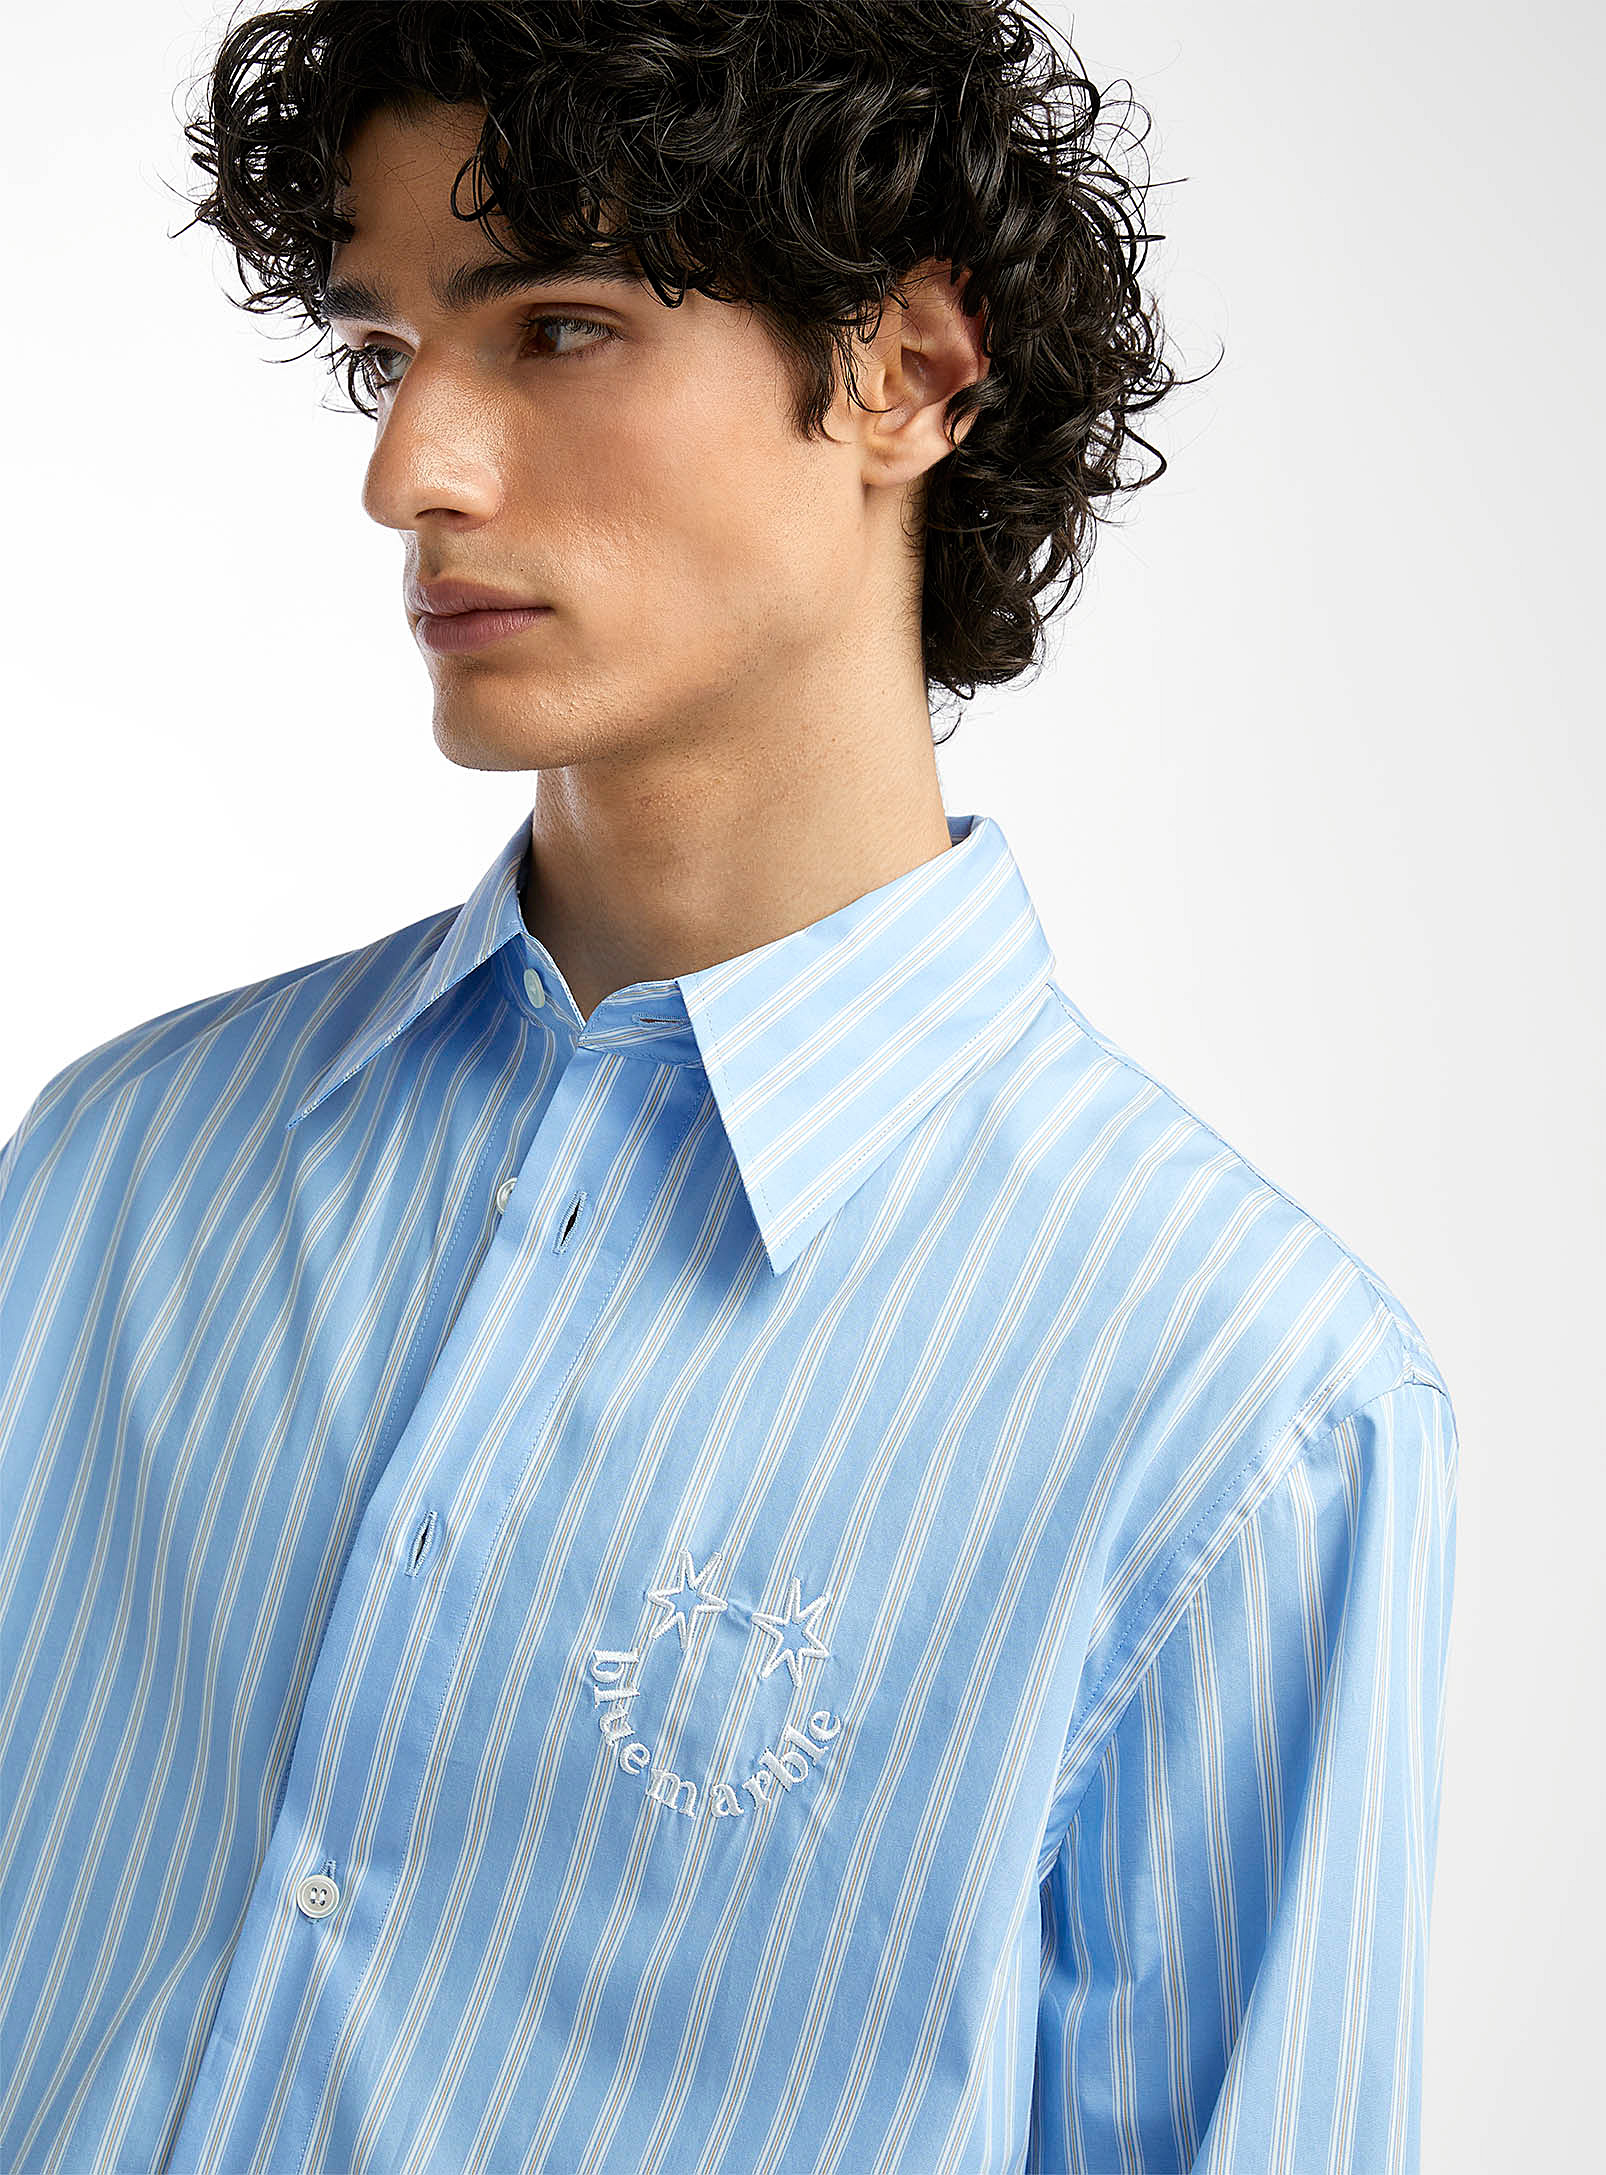 Bluemarble - La chemise brodée rayures pyjama